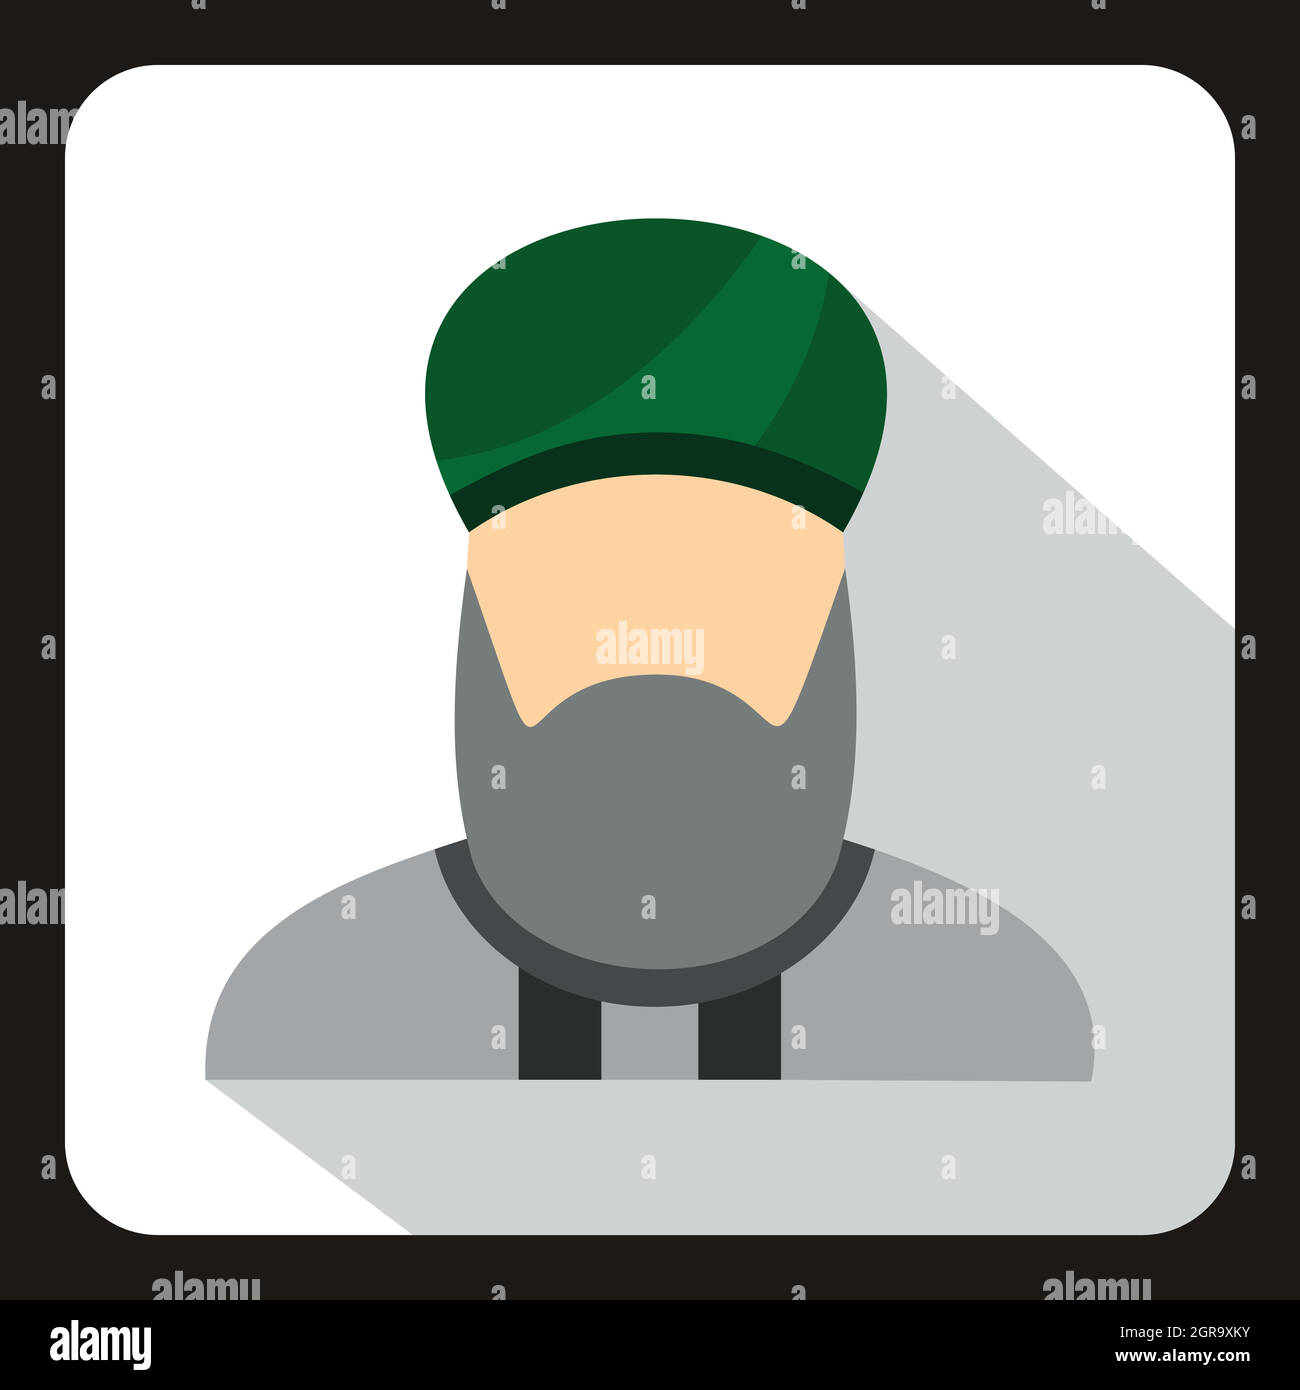 Muslim man with beard in green turban icon Stock Vector